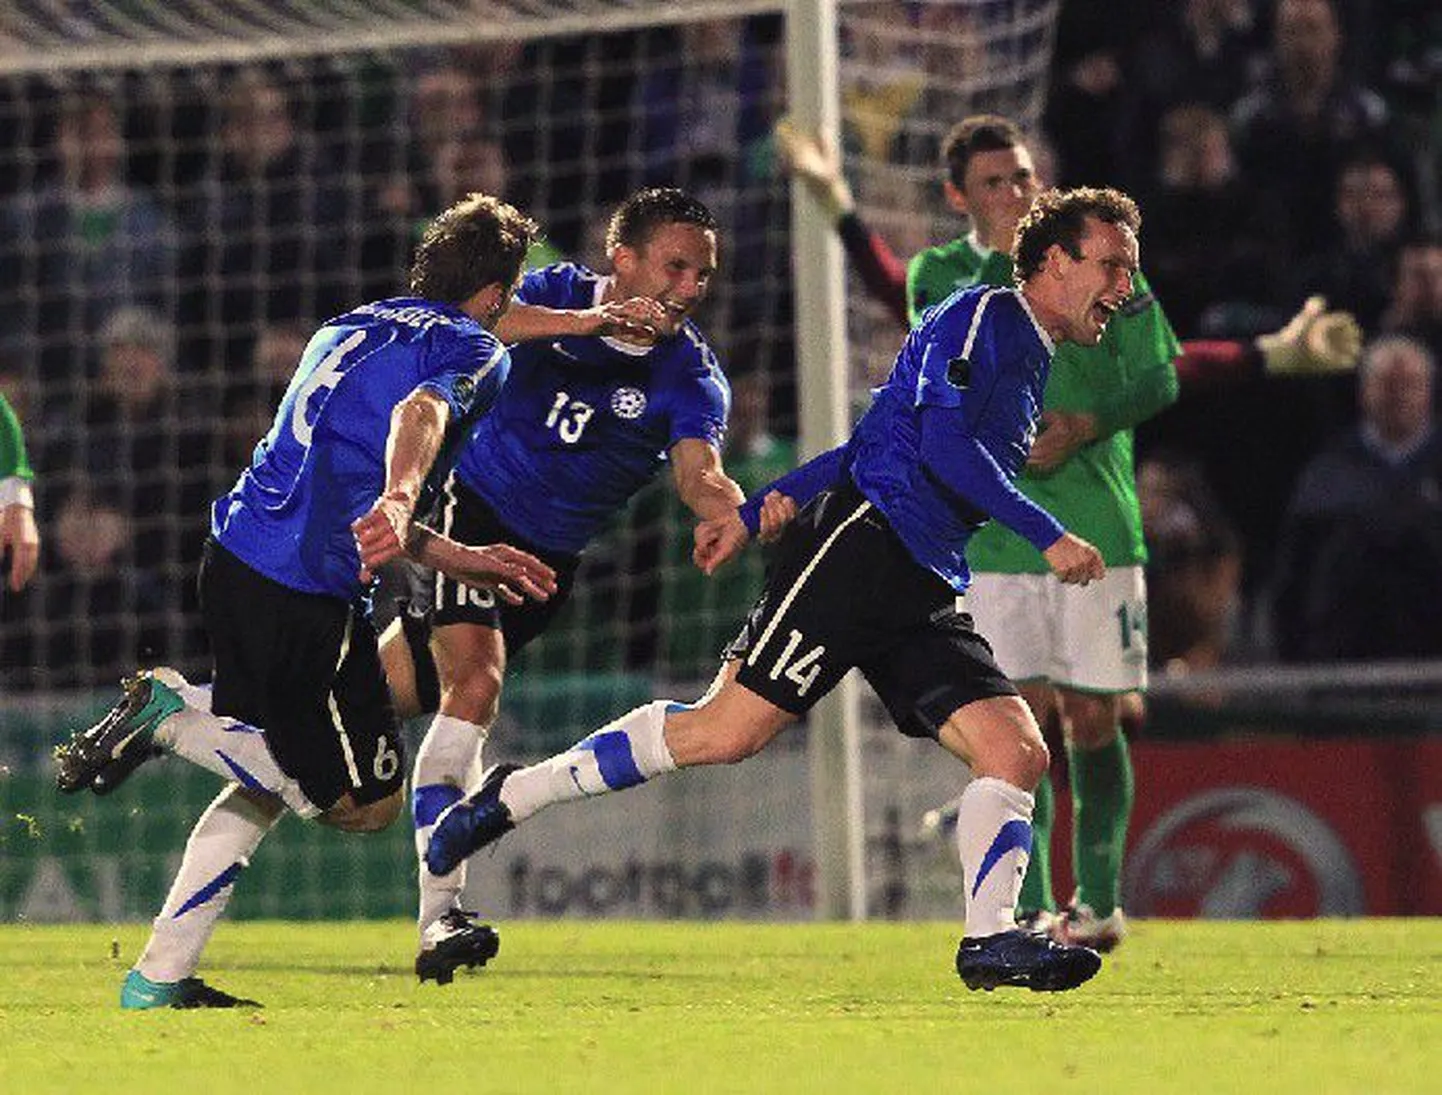 Отборочный тур чемпионата Европы по футболу сборная Эстонии завершила тремя победами подряд.  Героем матча со сборной Северной Ирландии стал Константин Васильев (справа).